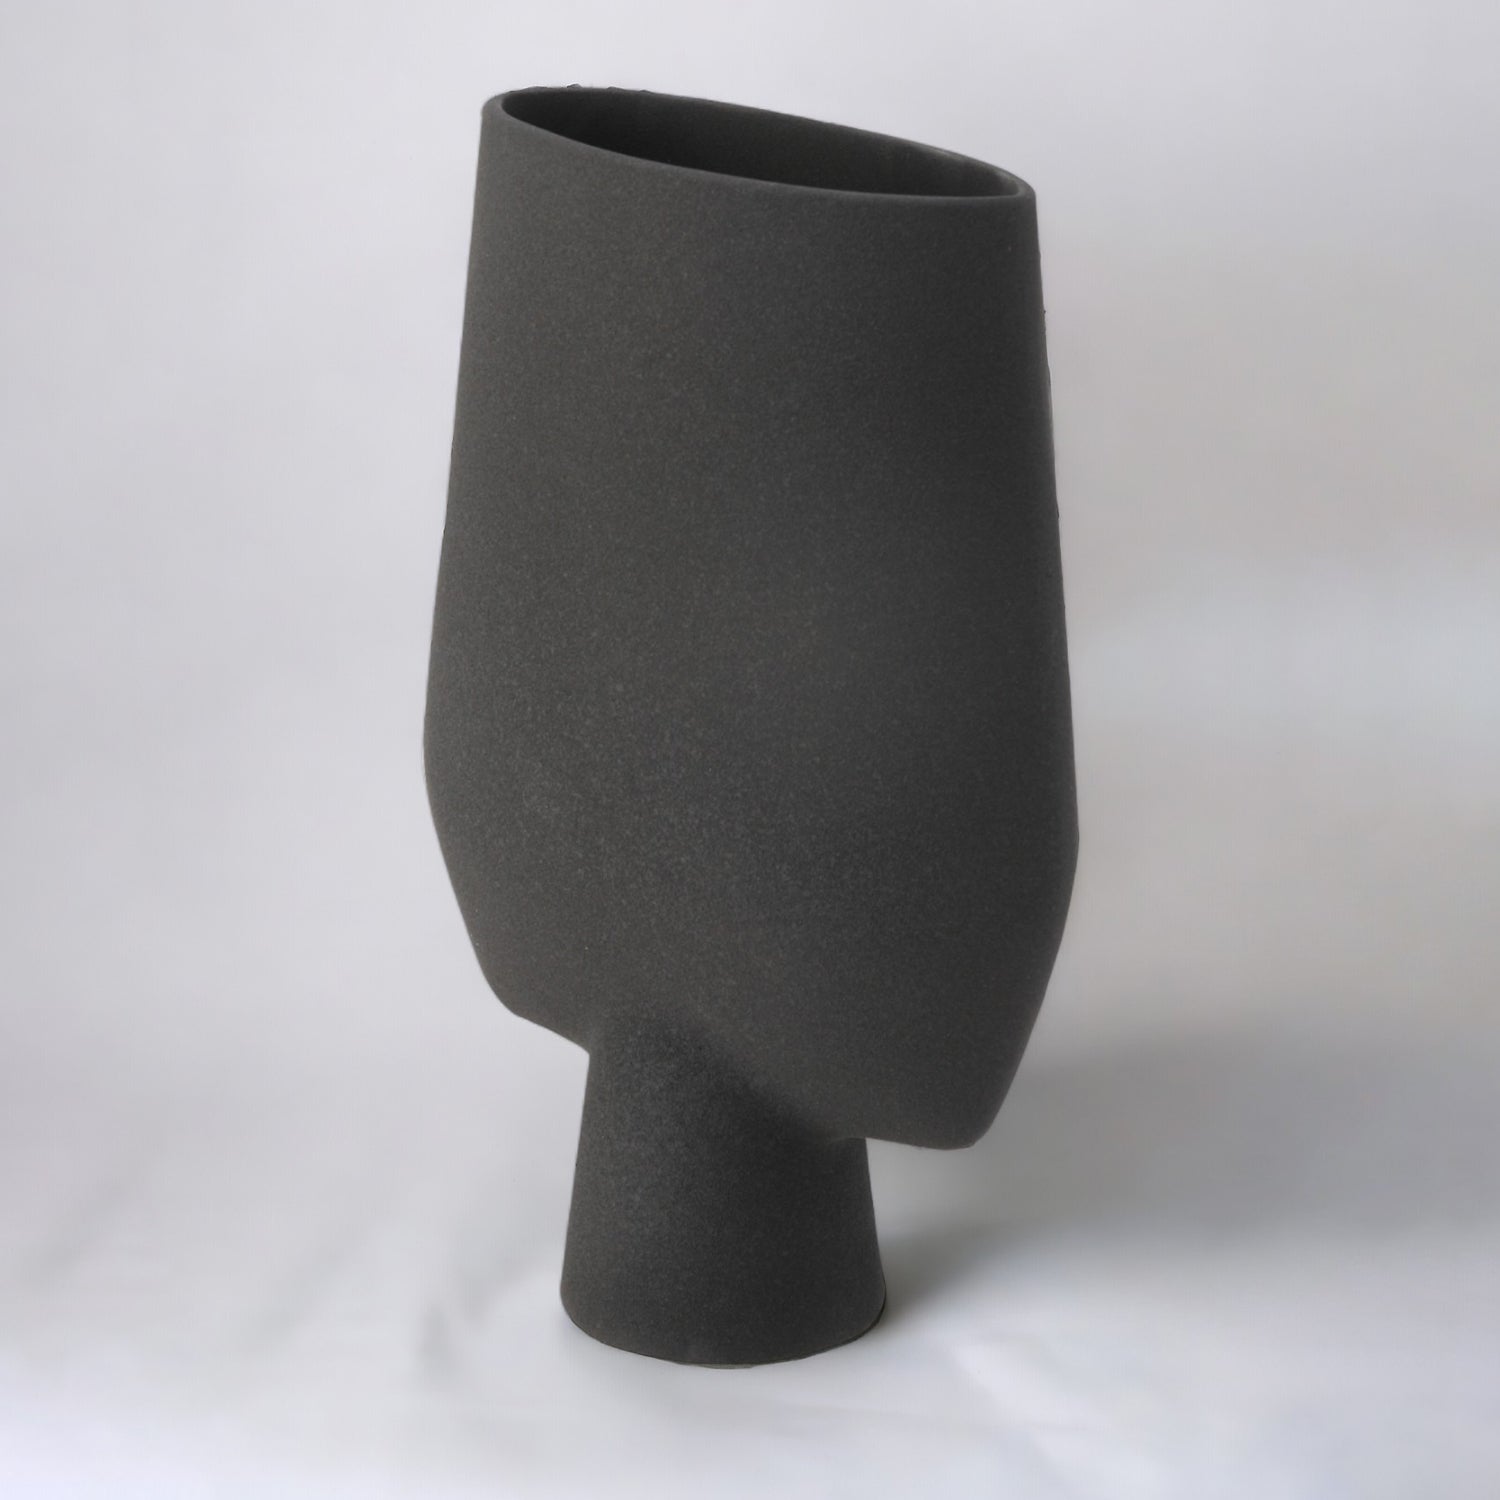 Decorative Flower Vase for Living Room - Charcoal Black